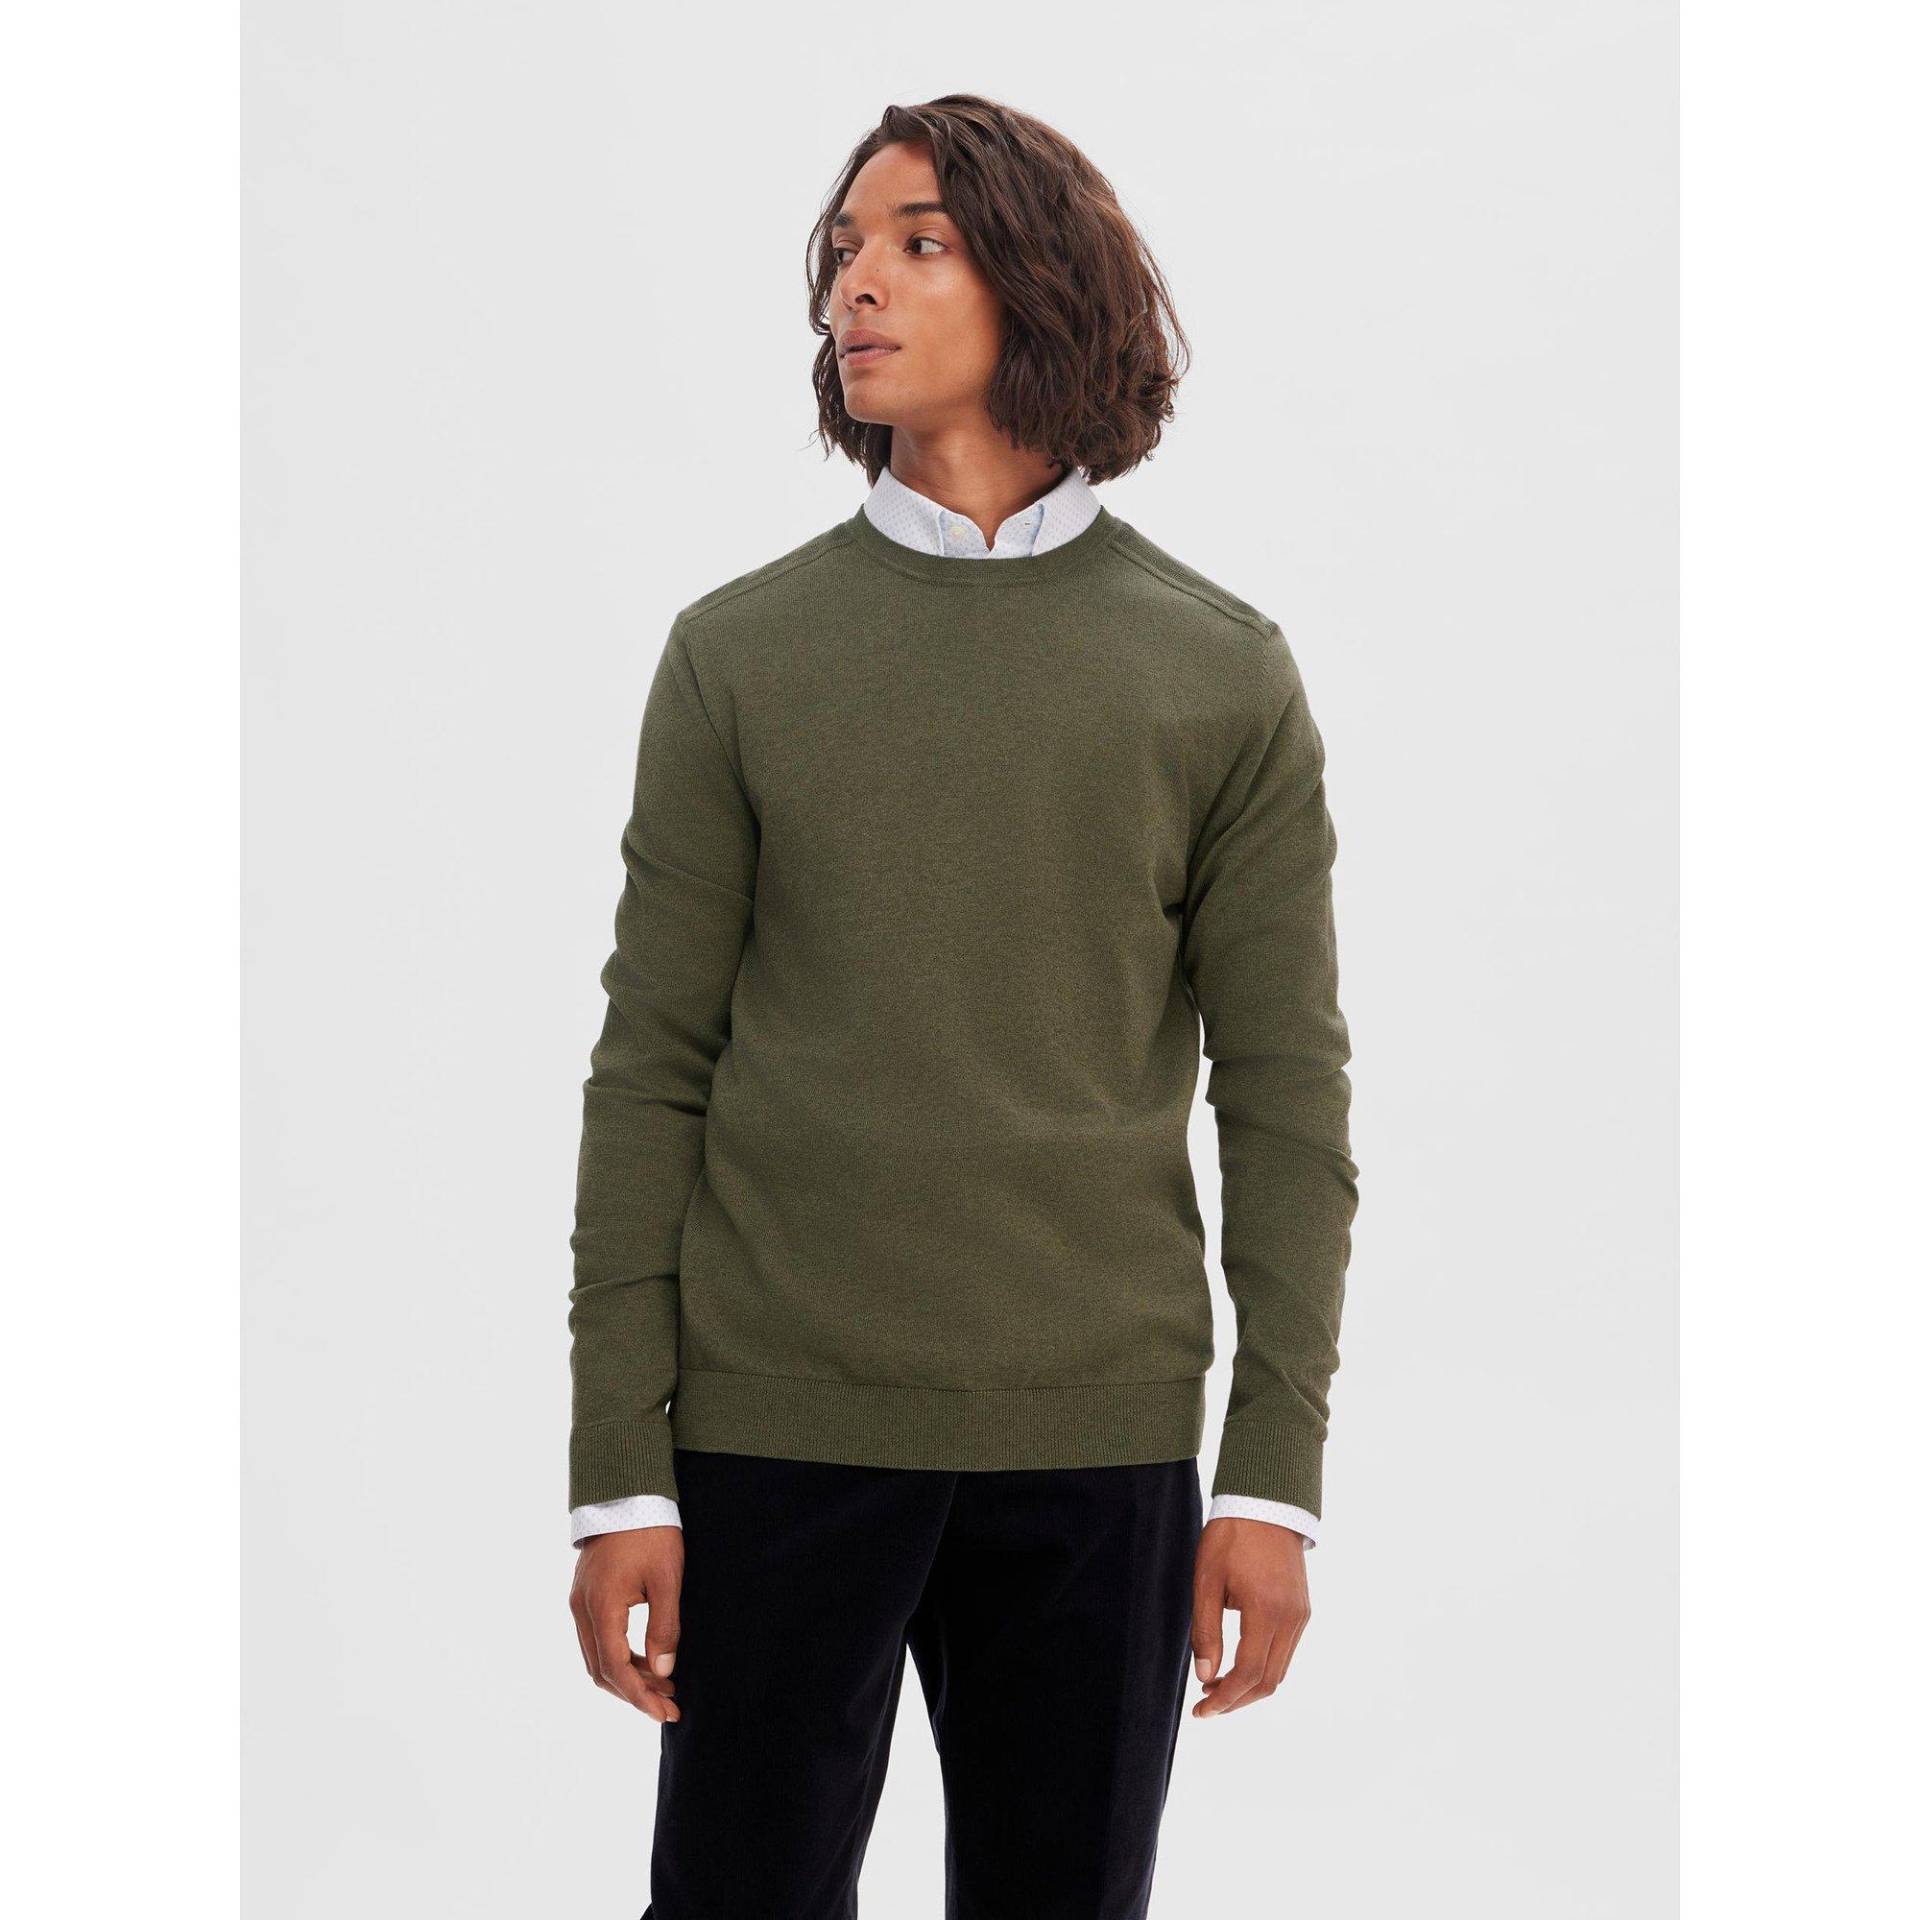 Pullover Herren Khaki XL von SELECTED